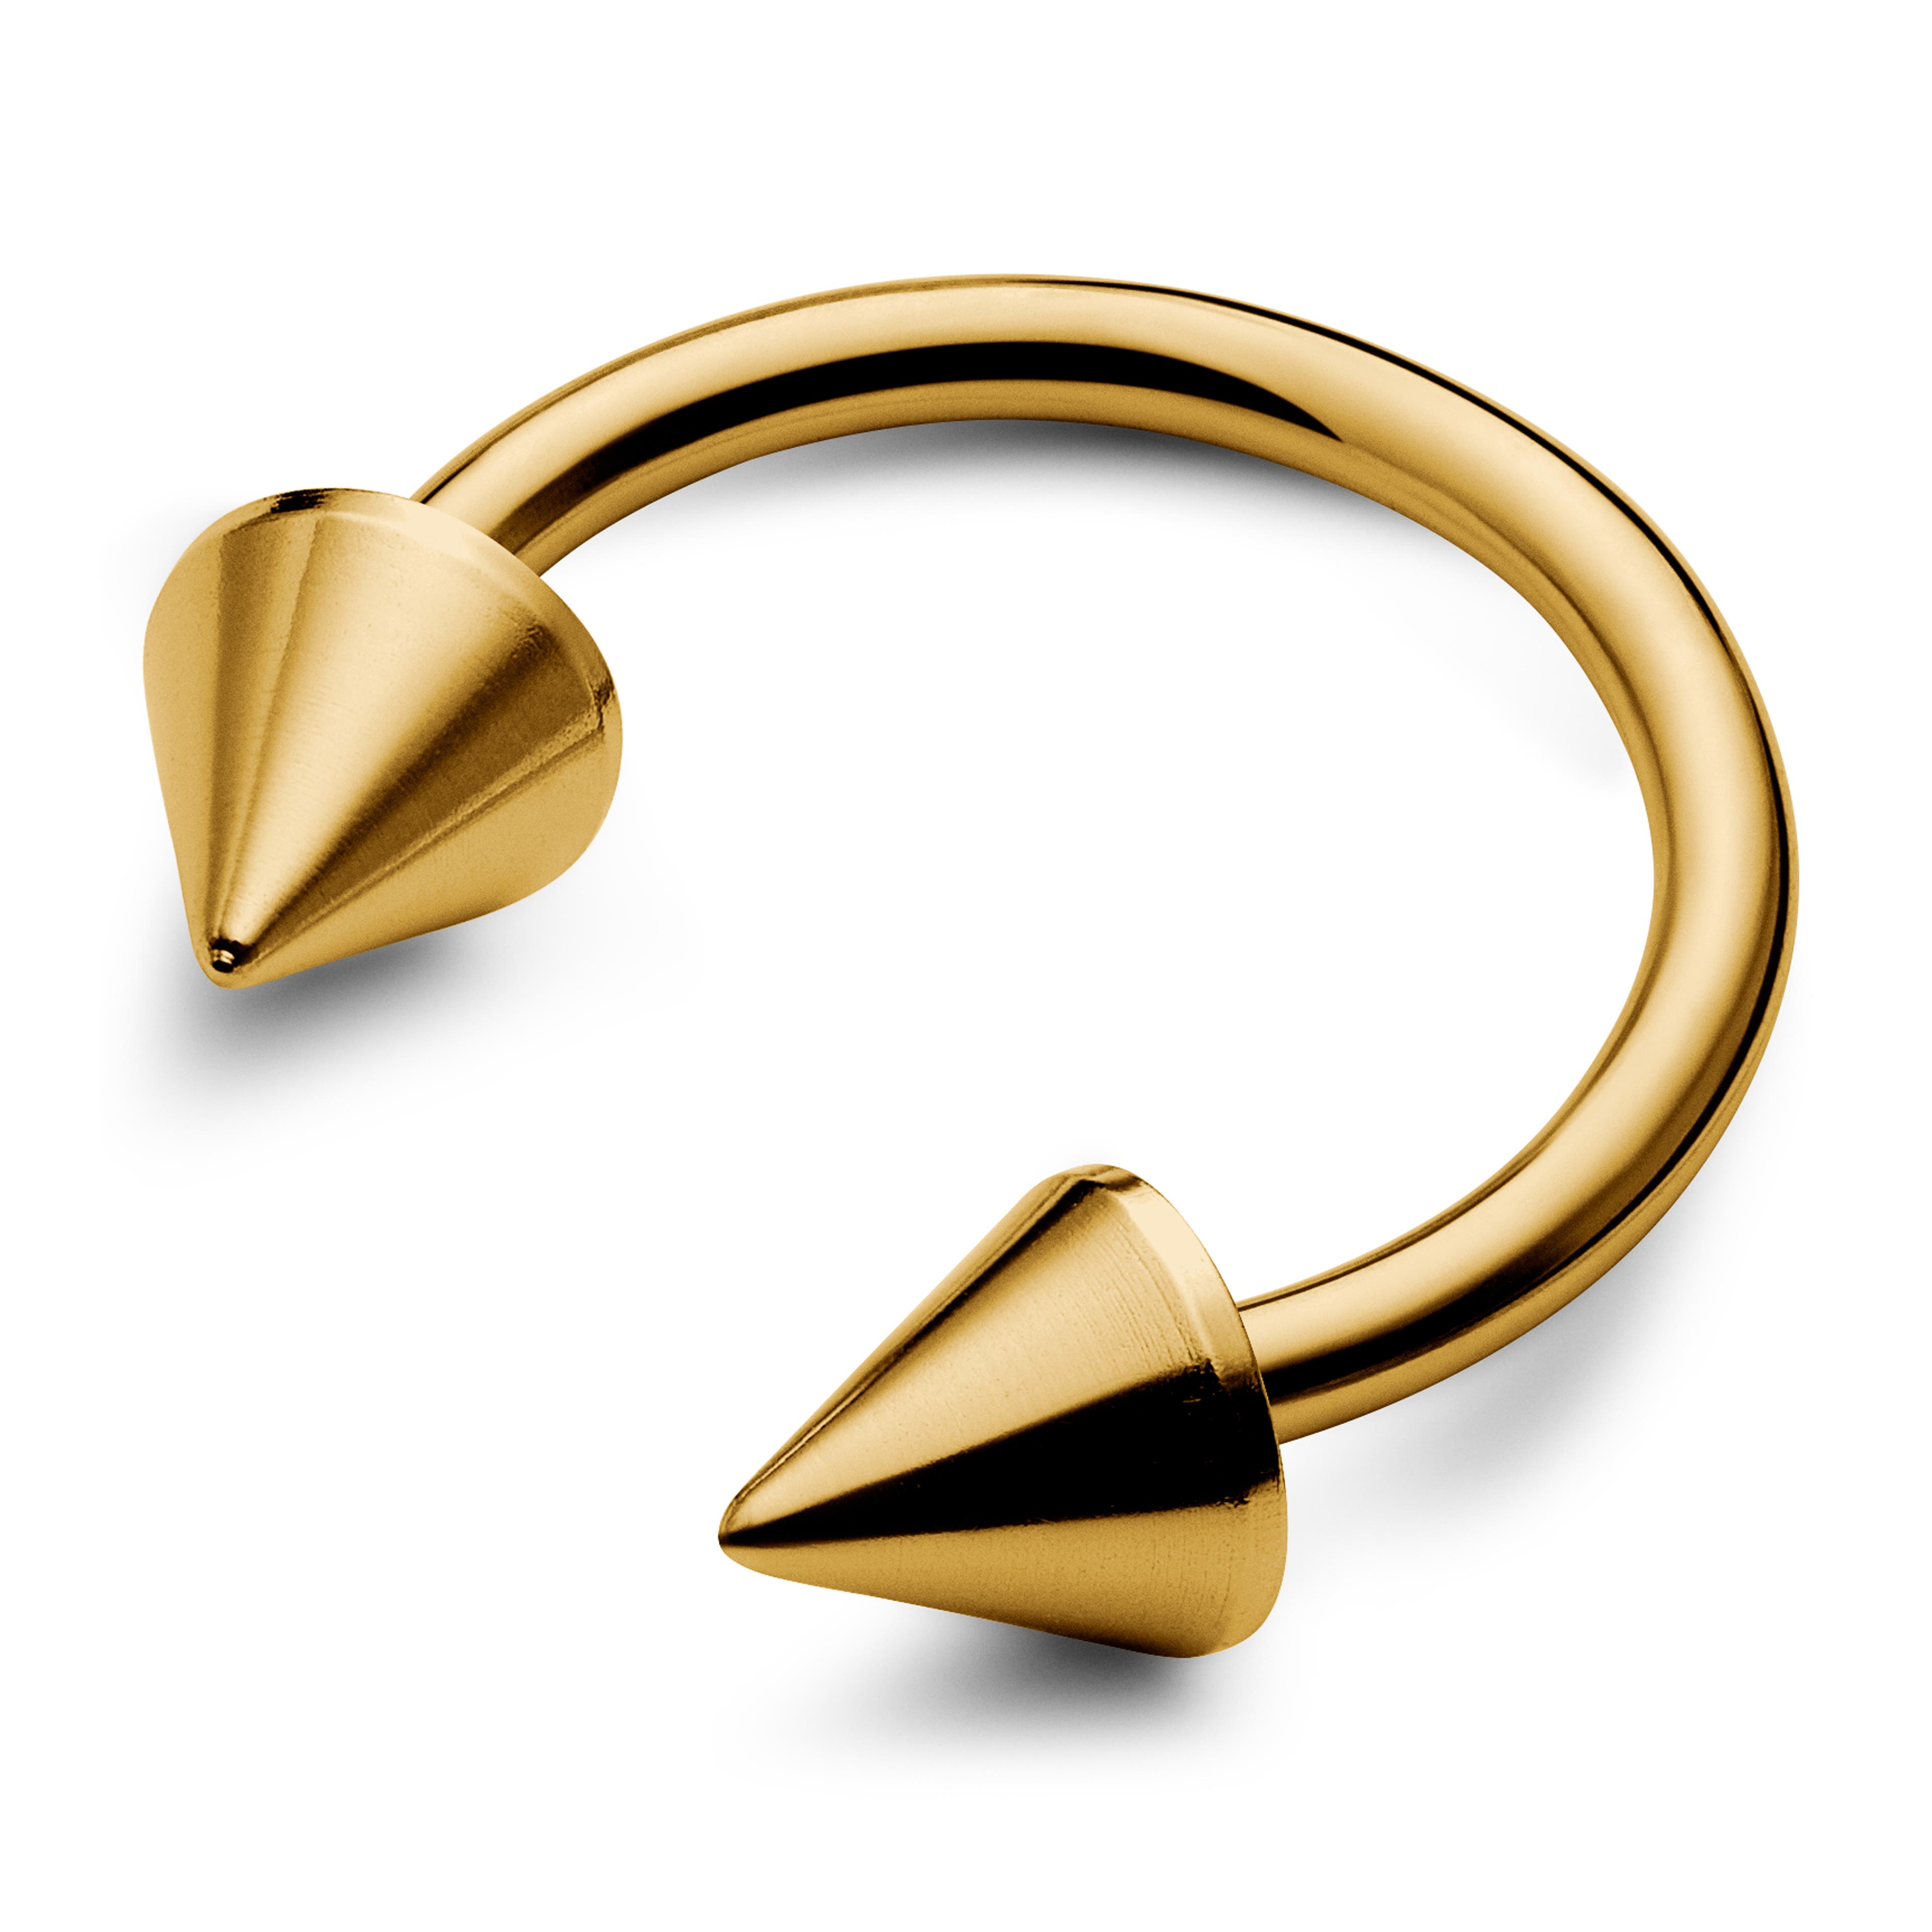 10 mm Goldfarbene runde Barbell (Hantel) aus Titan mit Stacheln